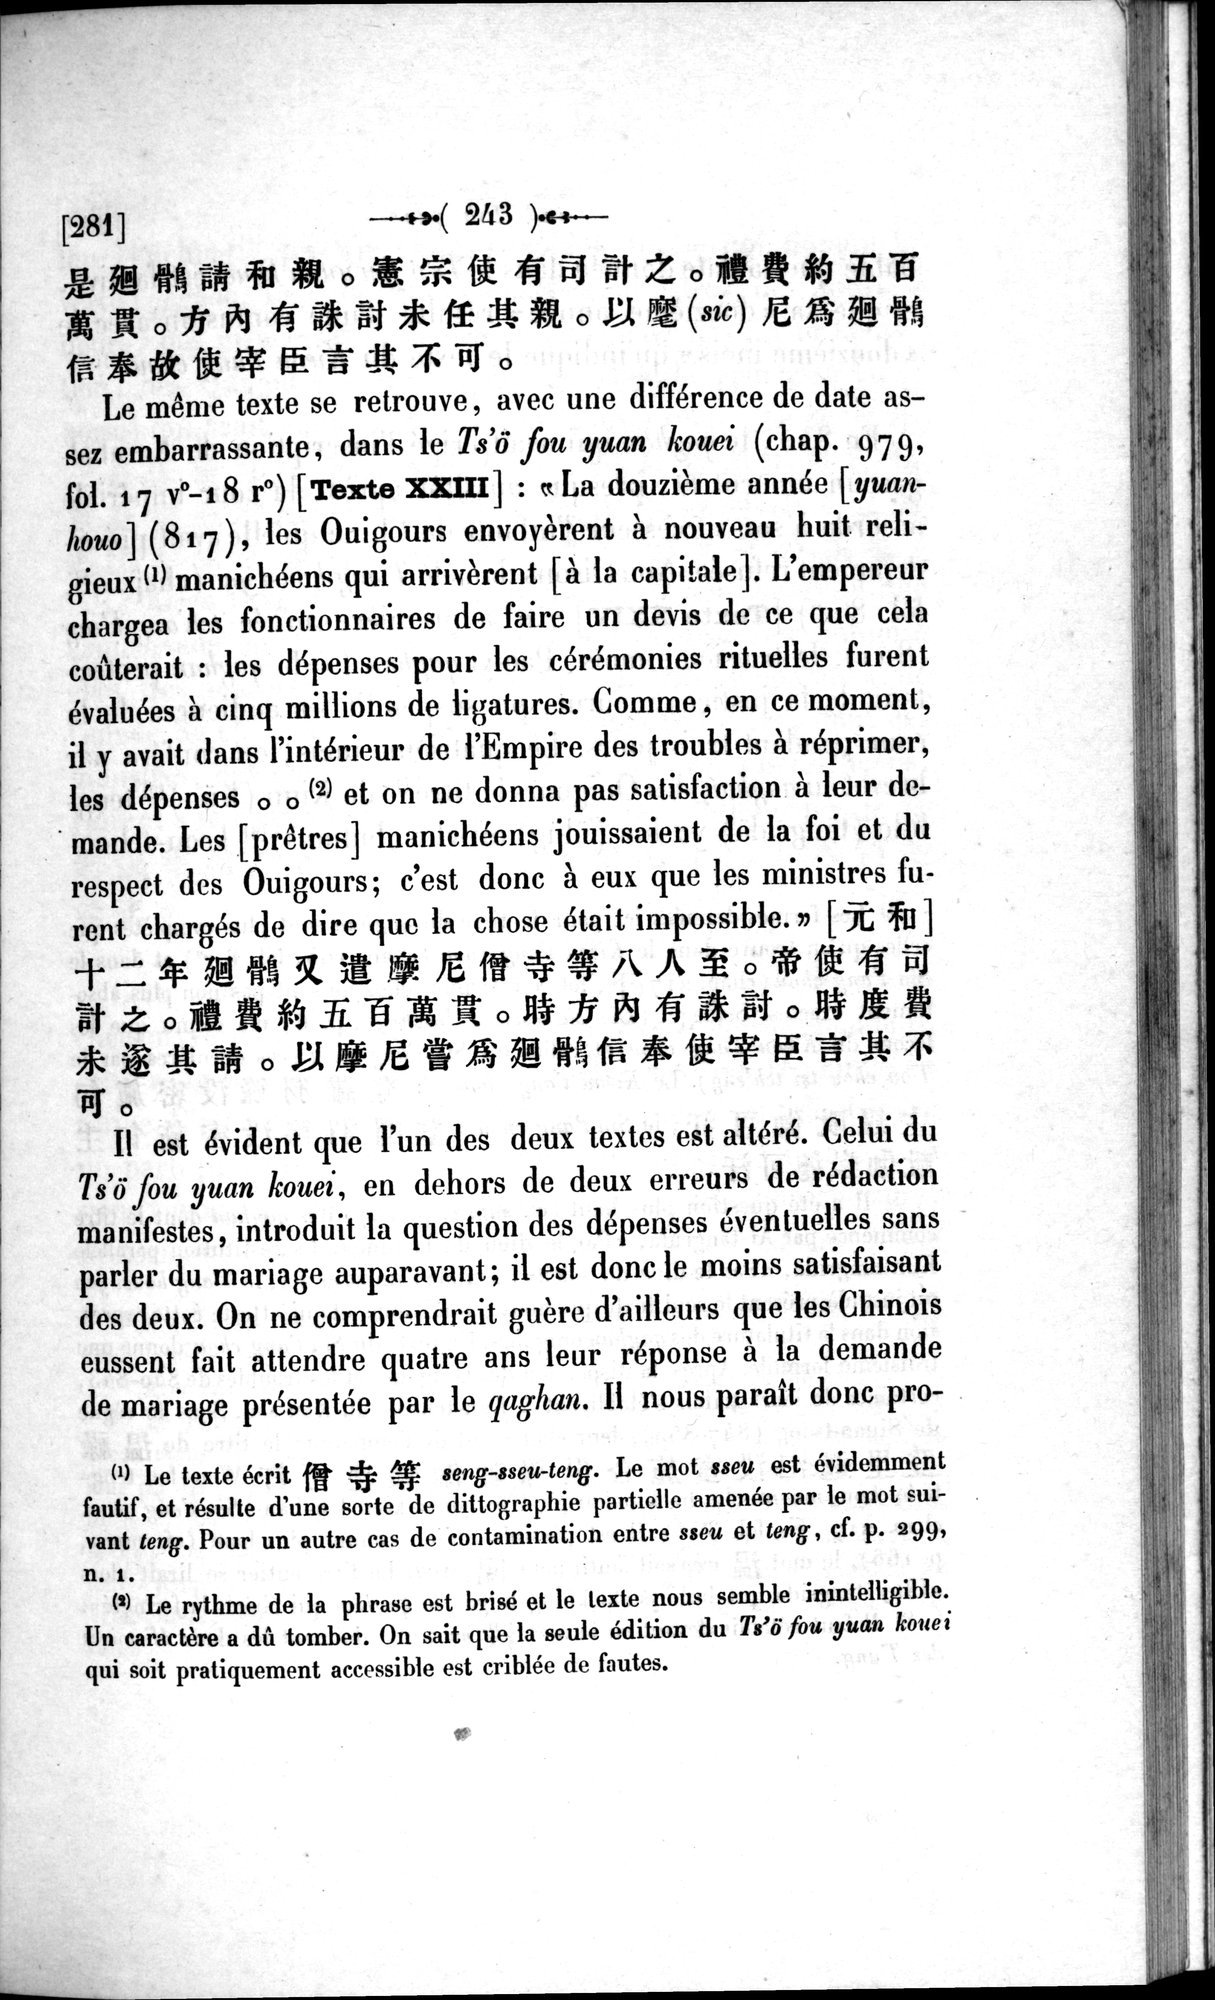 Un traité manichéen retrouvé en Chine : vol.1 / Page 253 (Grayscale High Resolution Image)